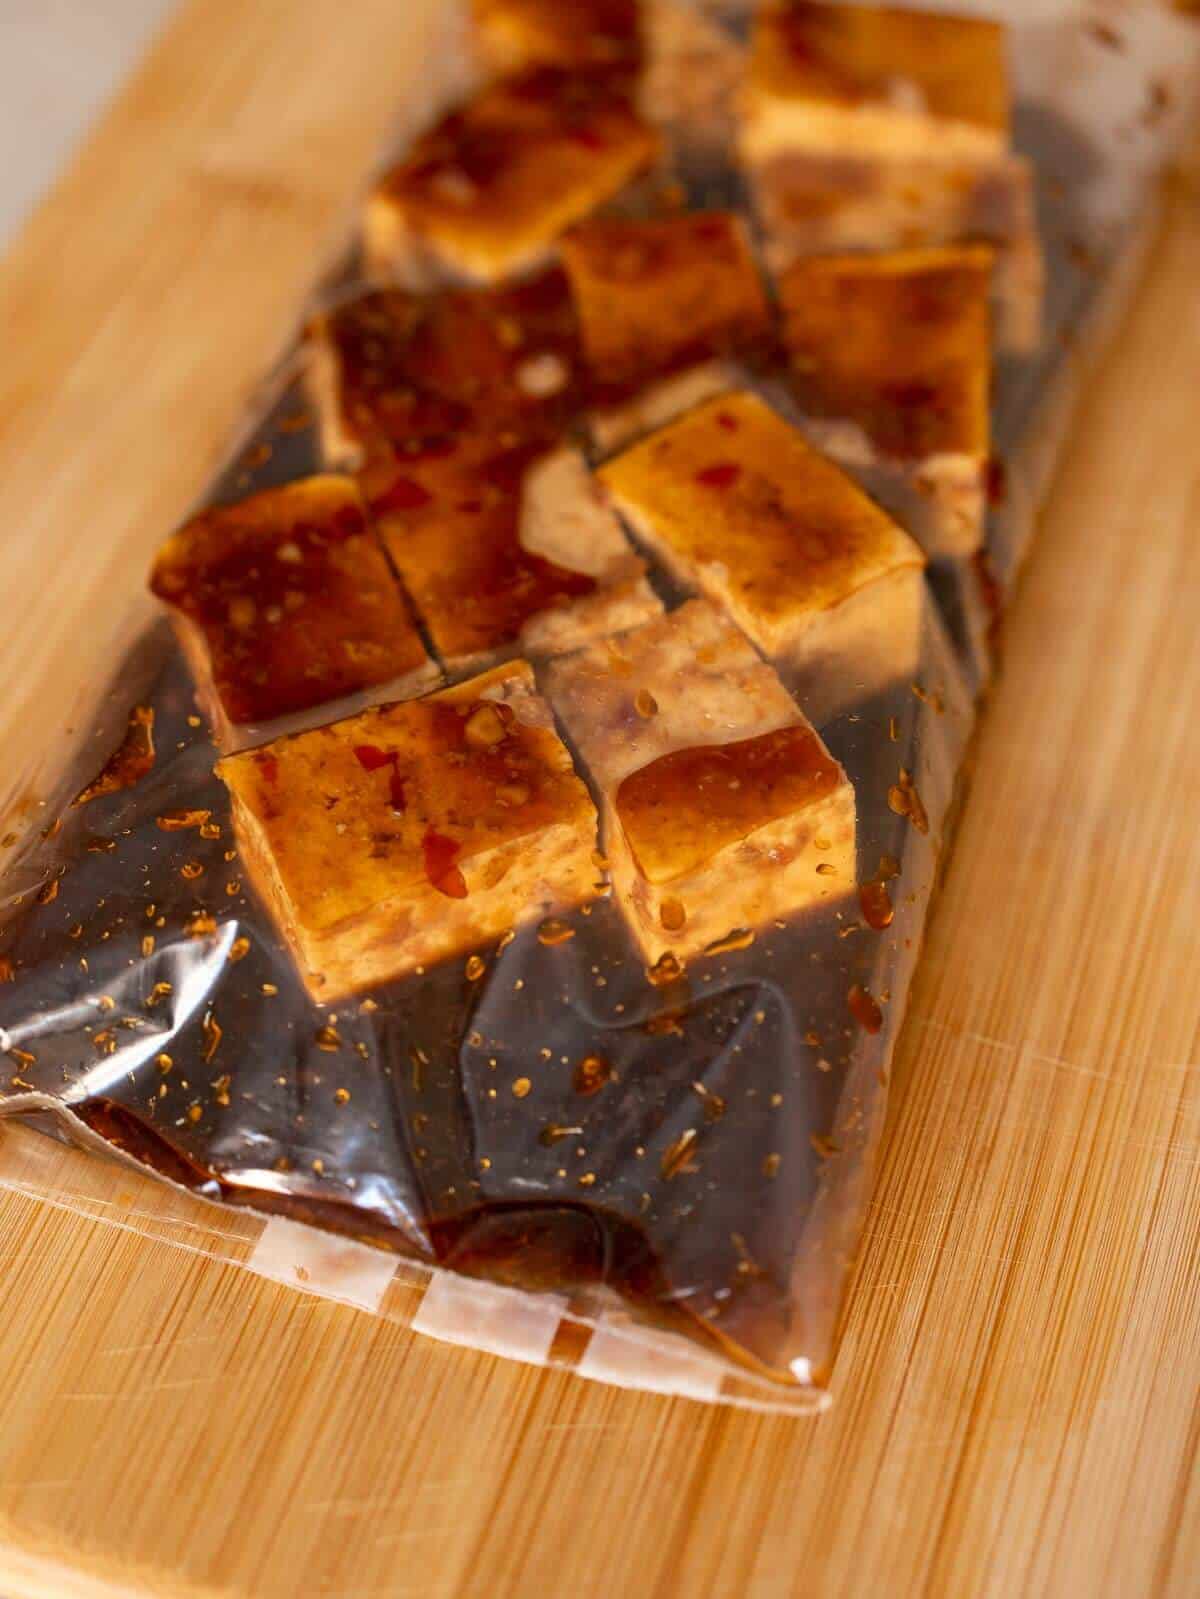 cubos de tofu en una bolsa ziplock con el marinado.